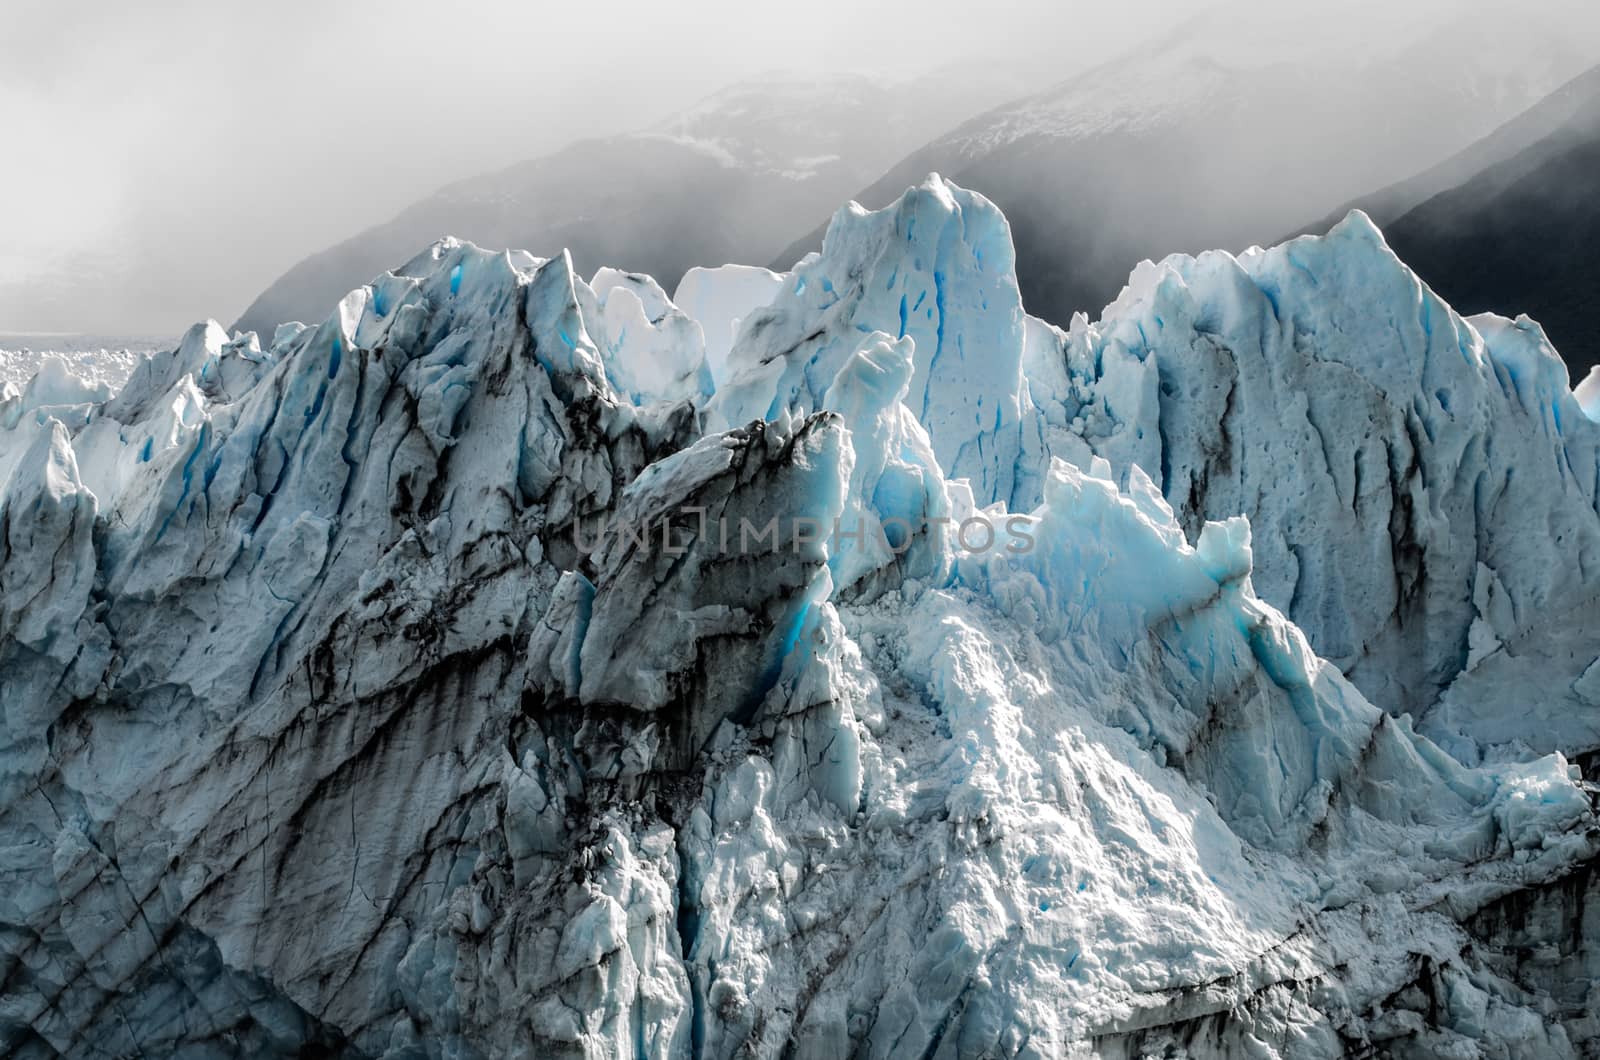 Perito Moreno glacier peaks bathed in beautiful sun light